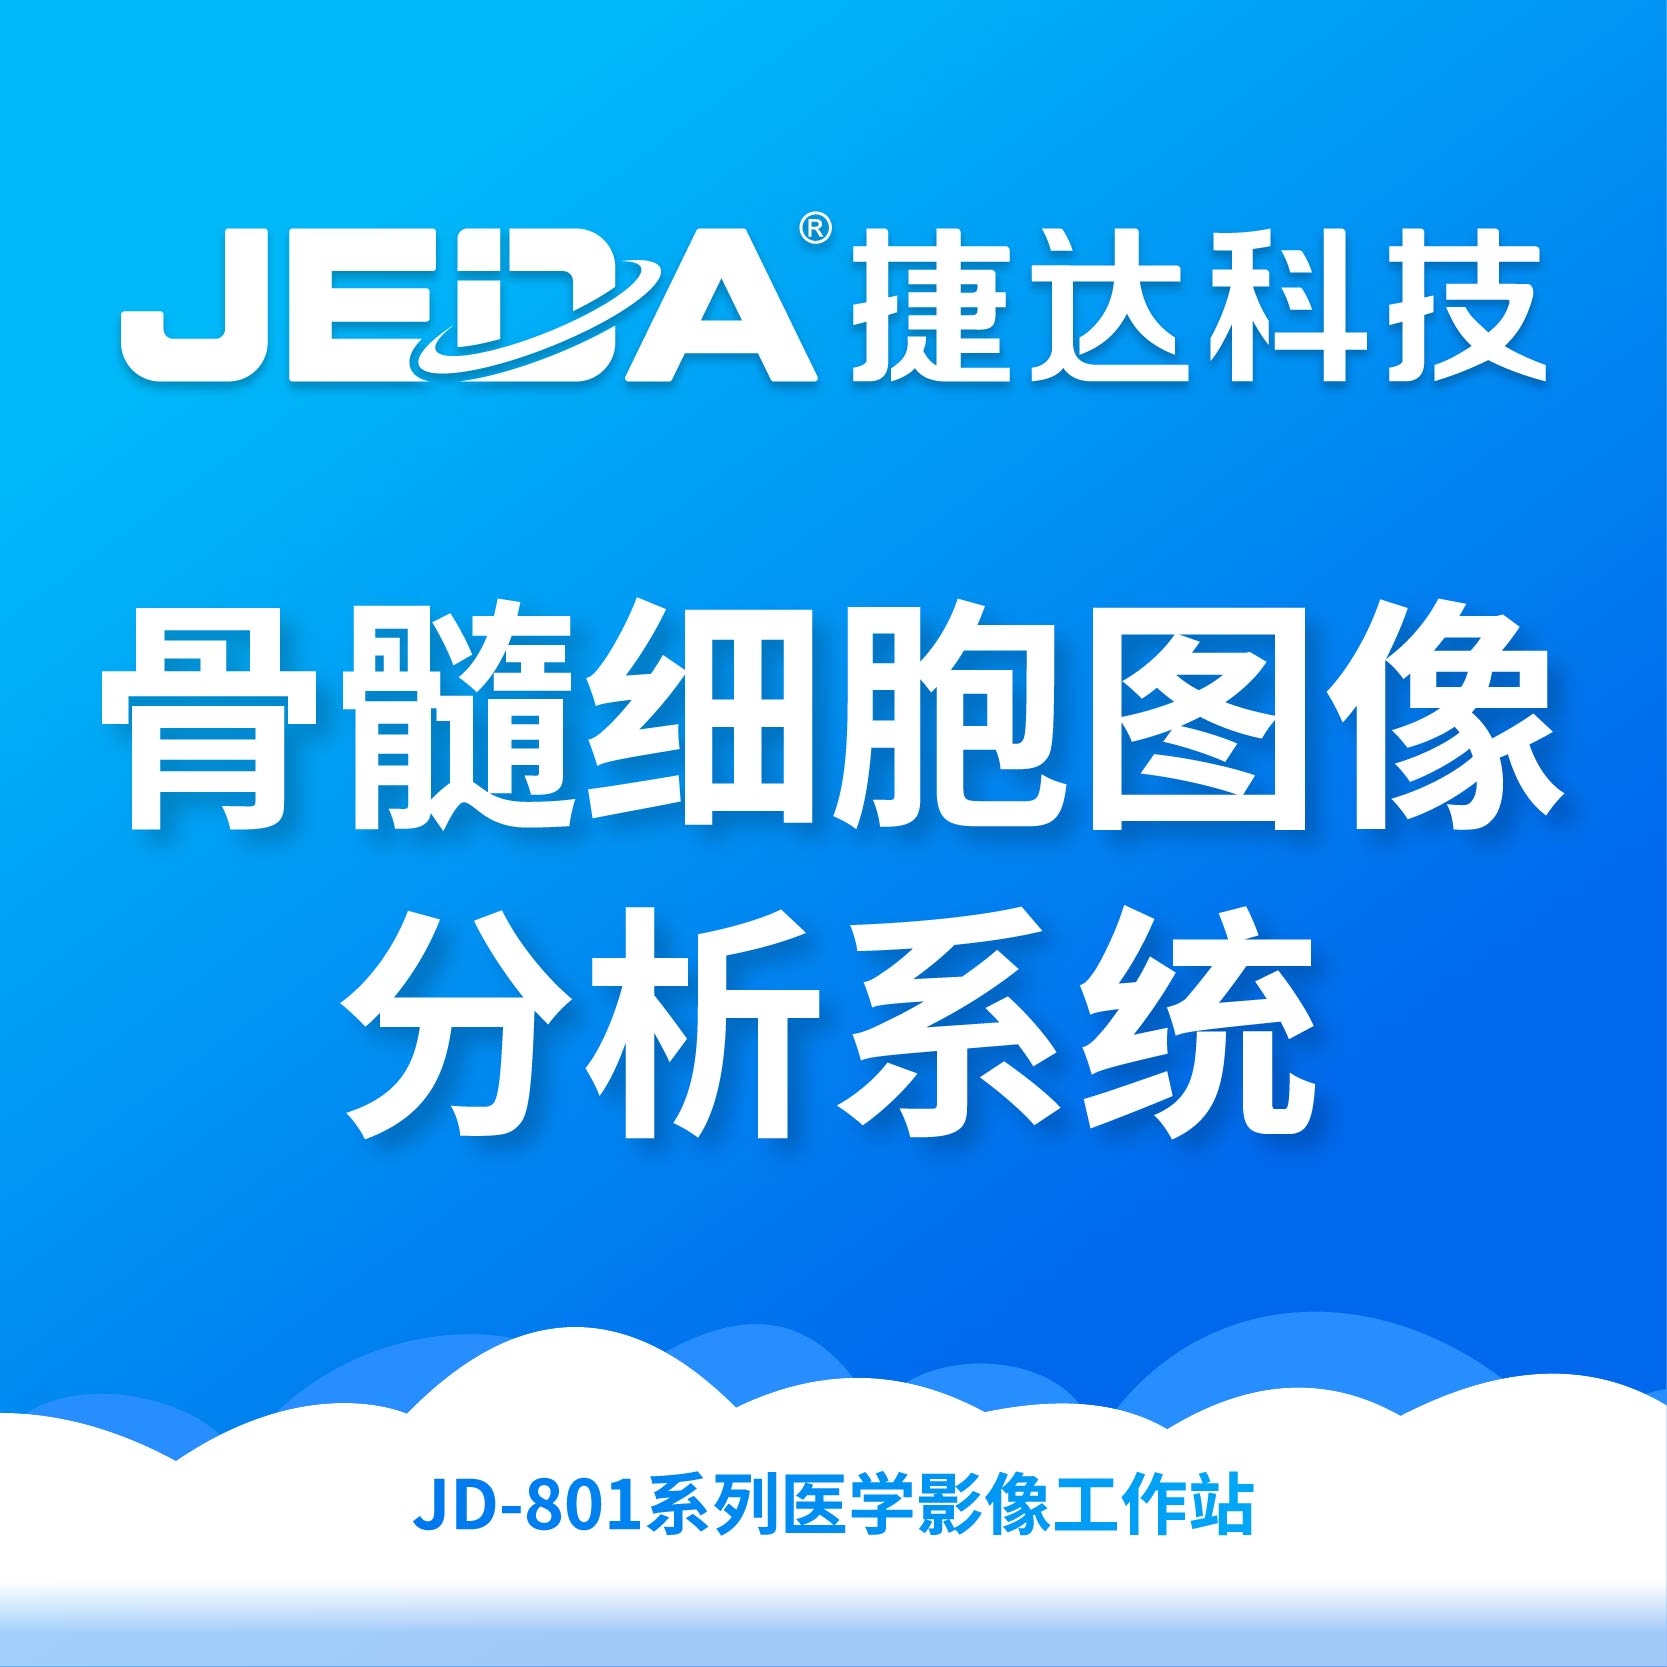 JD-801系列医学影像工作站-骨髓细胞图像分析系统-云医购